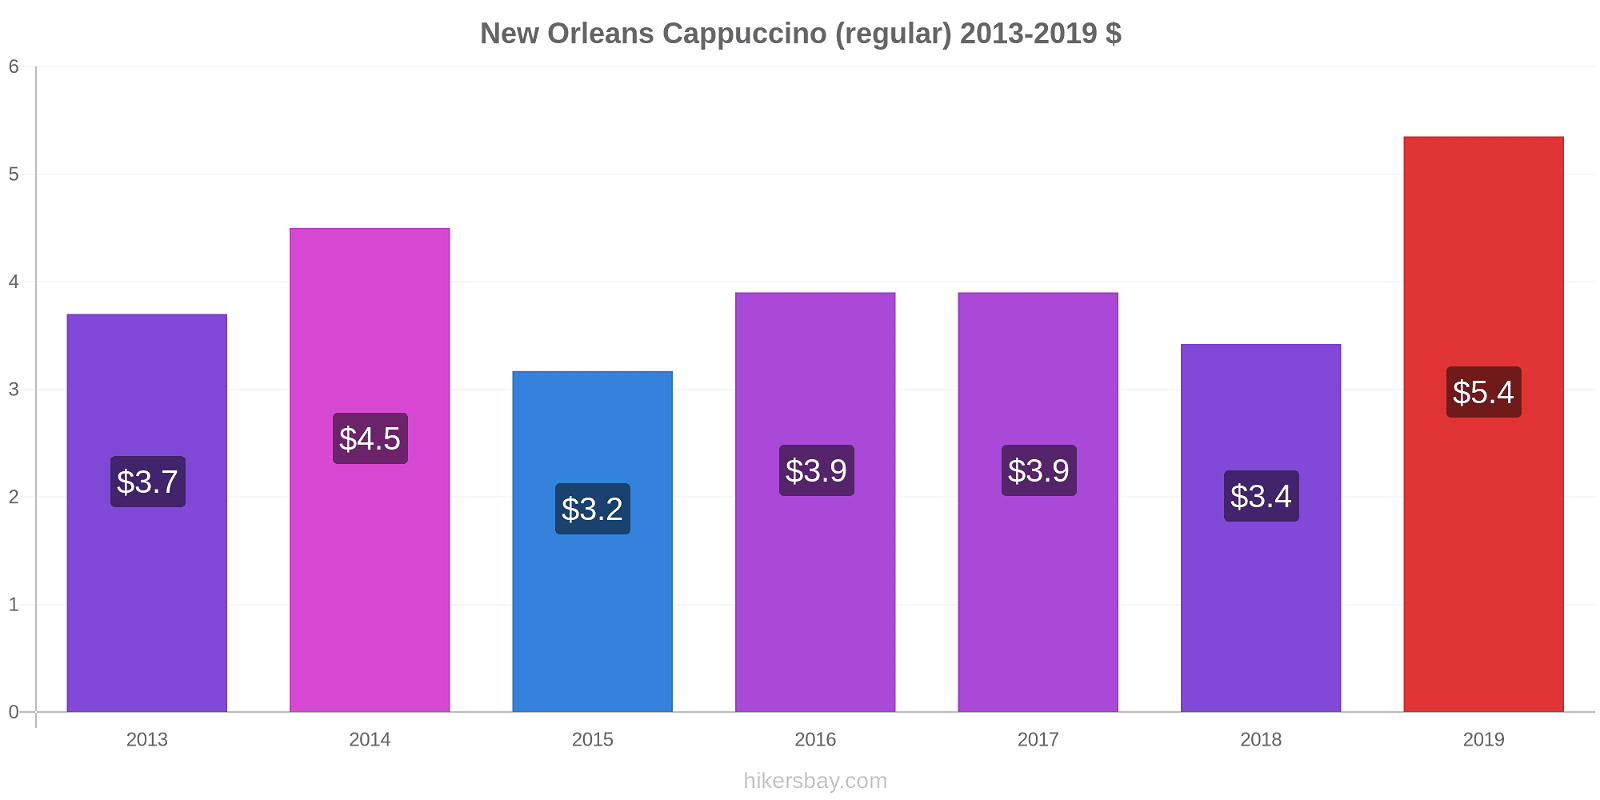 New Orleans price changes Cappuccino (regular) hikersbay.com